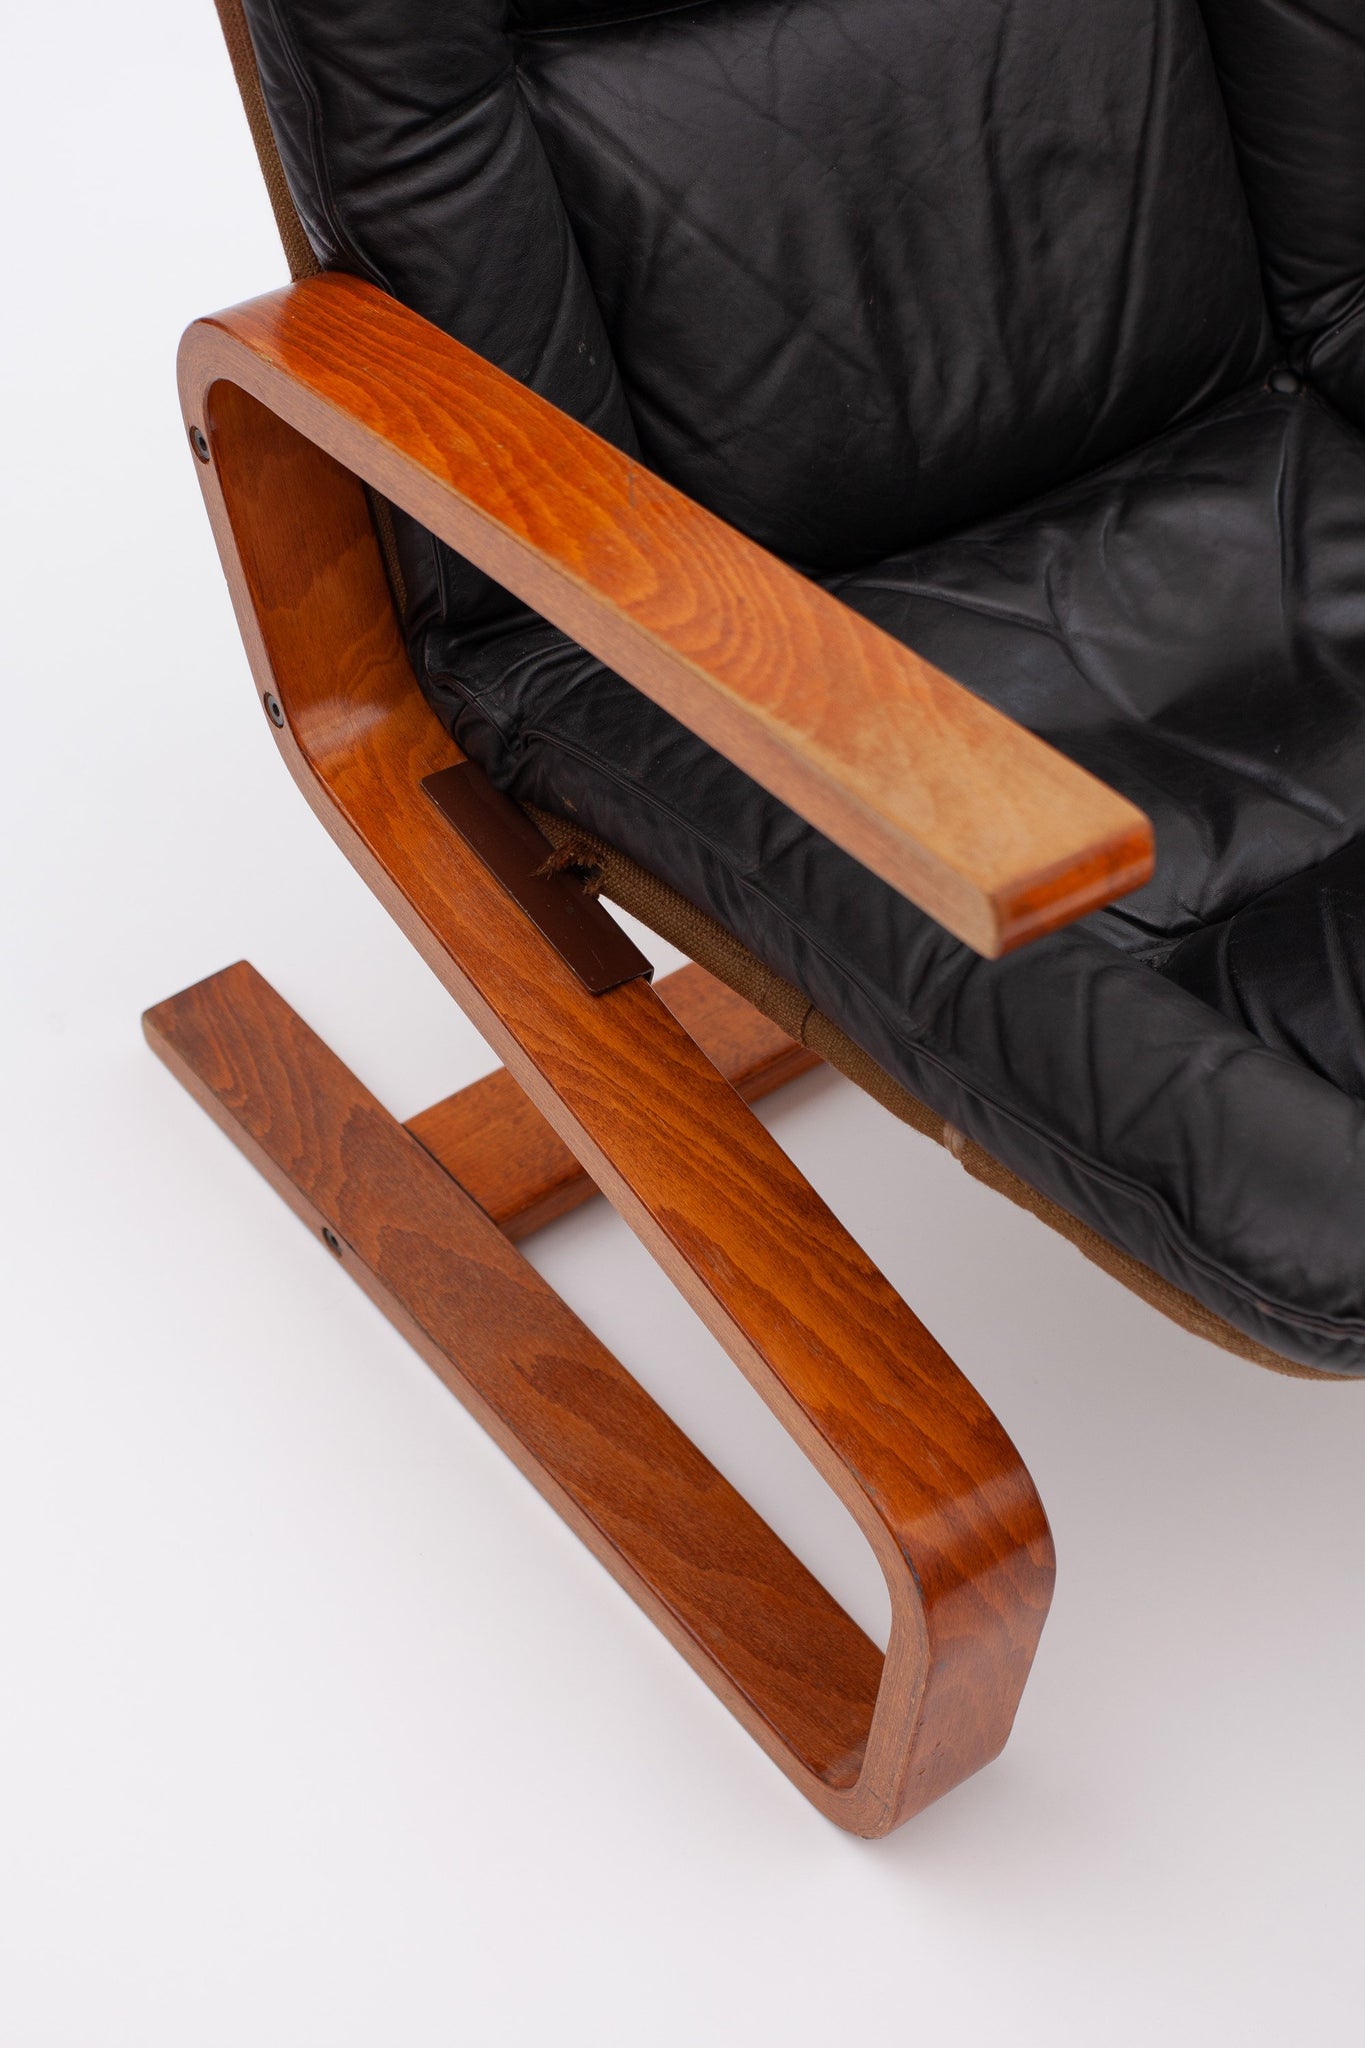 Siesta Chair von Igmar Relling